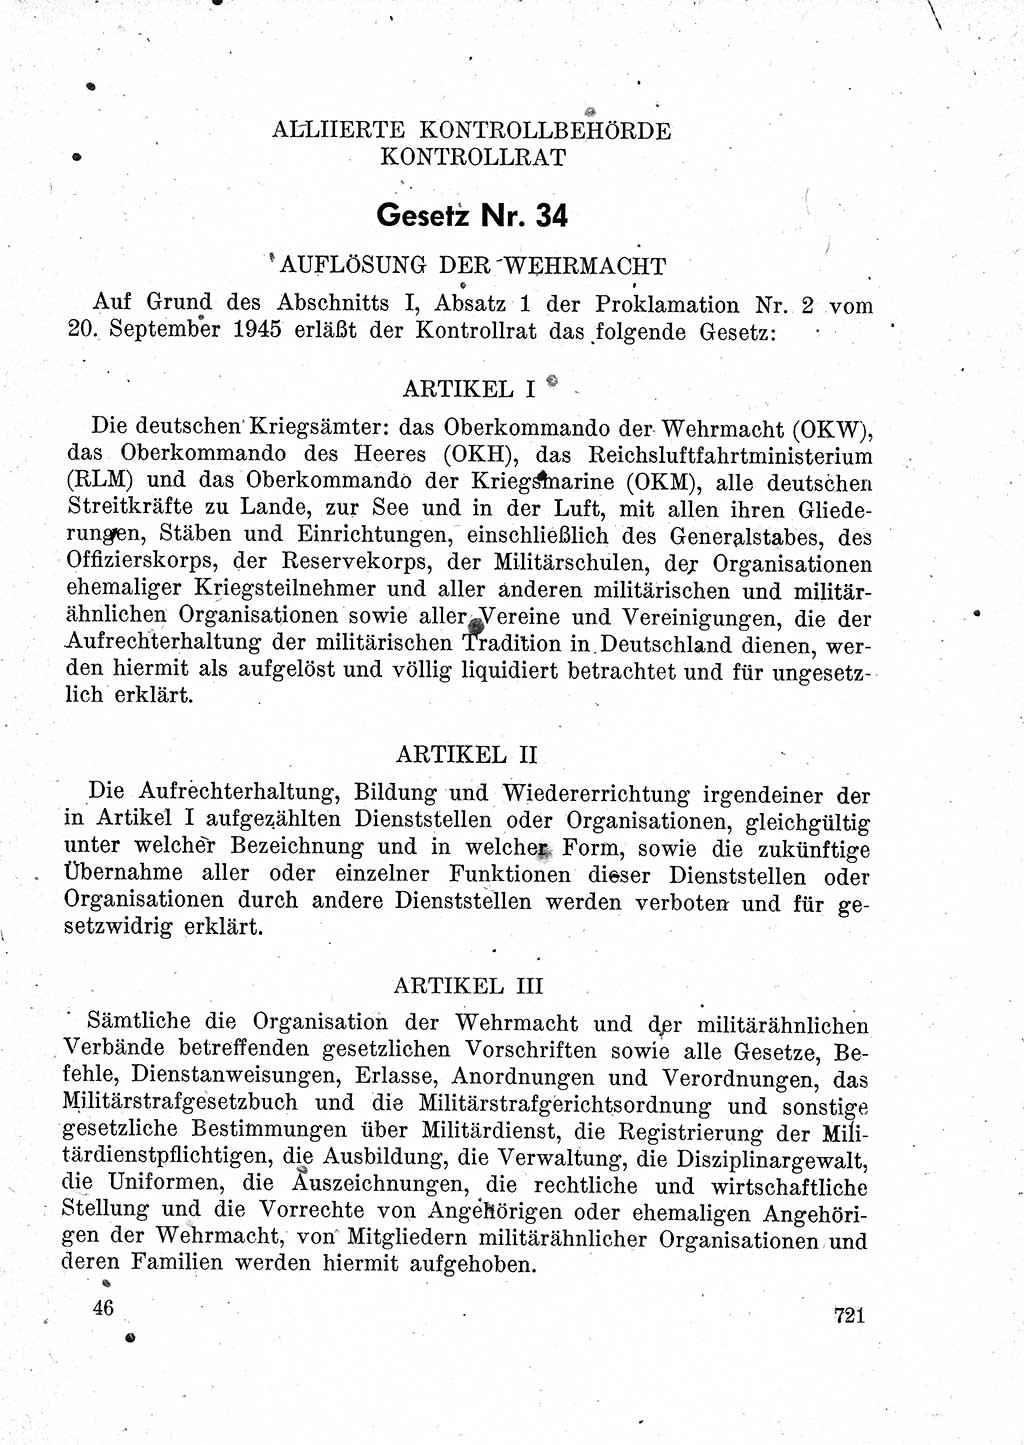 Das Recht der Besatzungsmacht (Deutschland), Proklamationen, Deklerationen, Verordnungen, Gesetze und Bekanntmachungen 1947, Seite 721 (R. Bes. Dtl. 1947, S. 721)